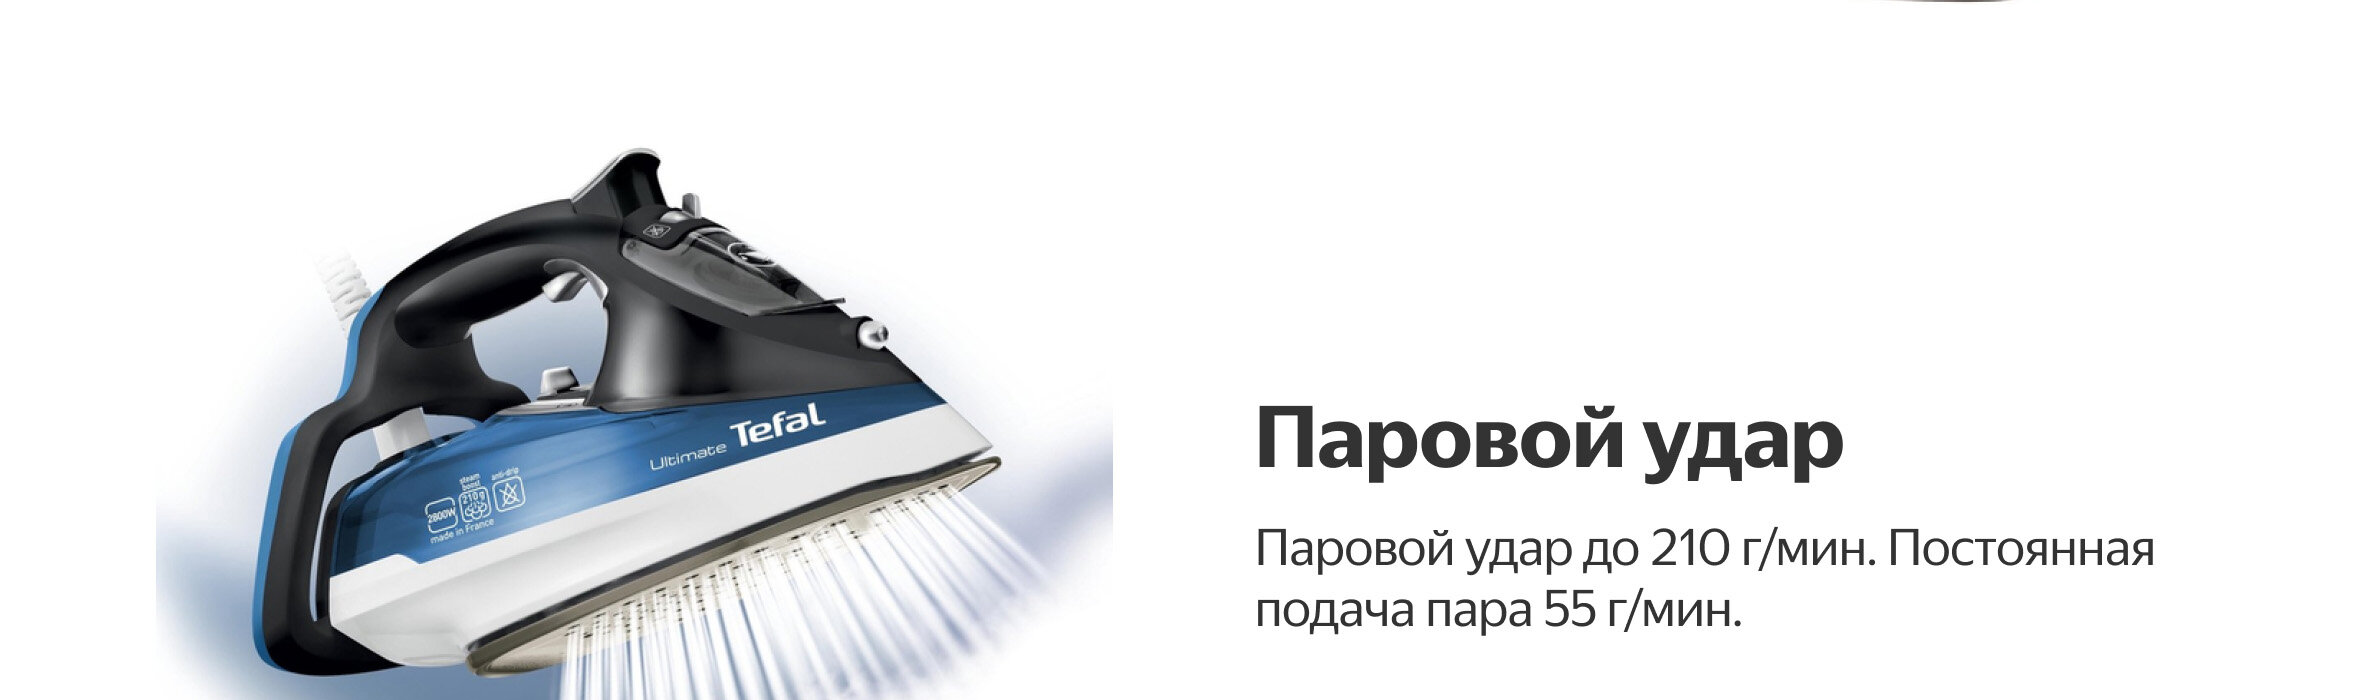 Утюг Tefal FV9710 Ultimate — купить по выгодной цене на Яндекс Маркете